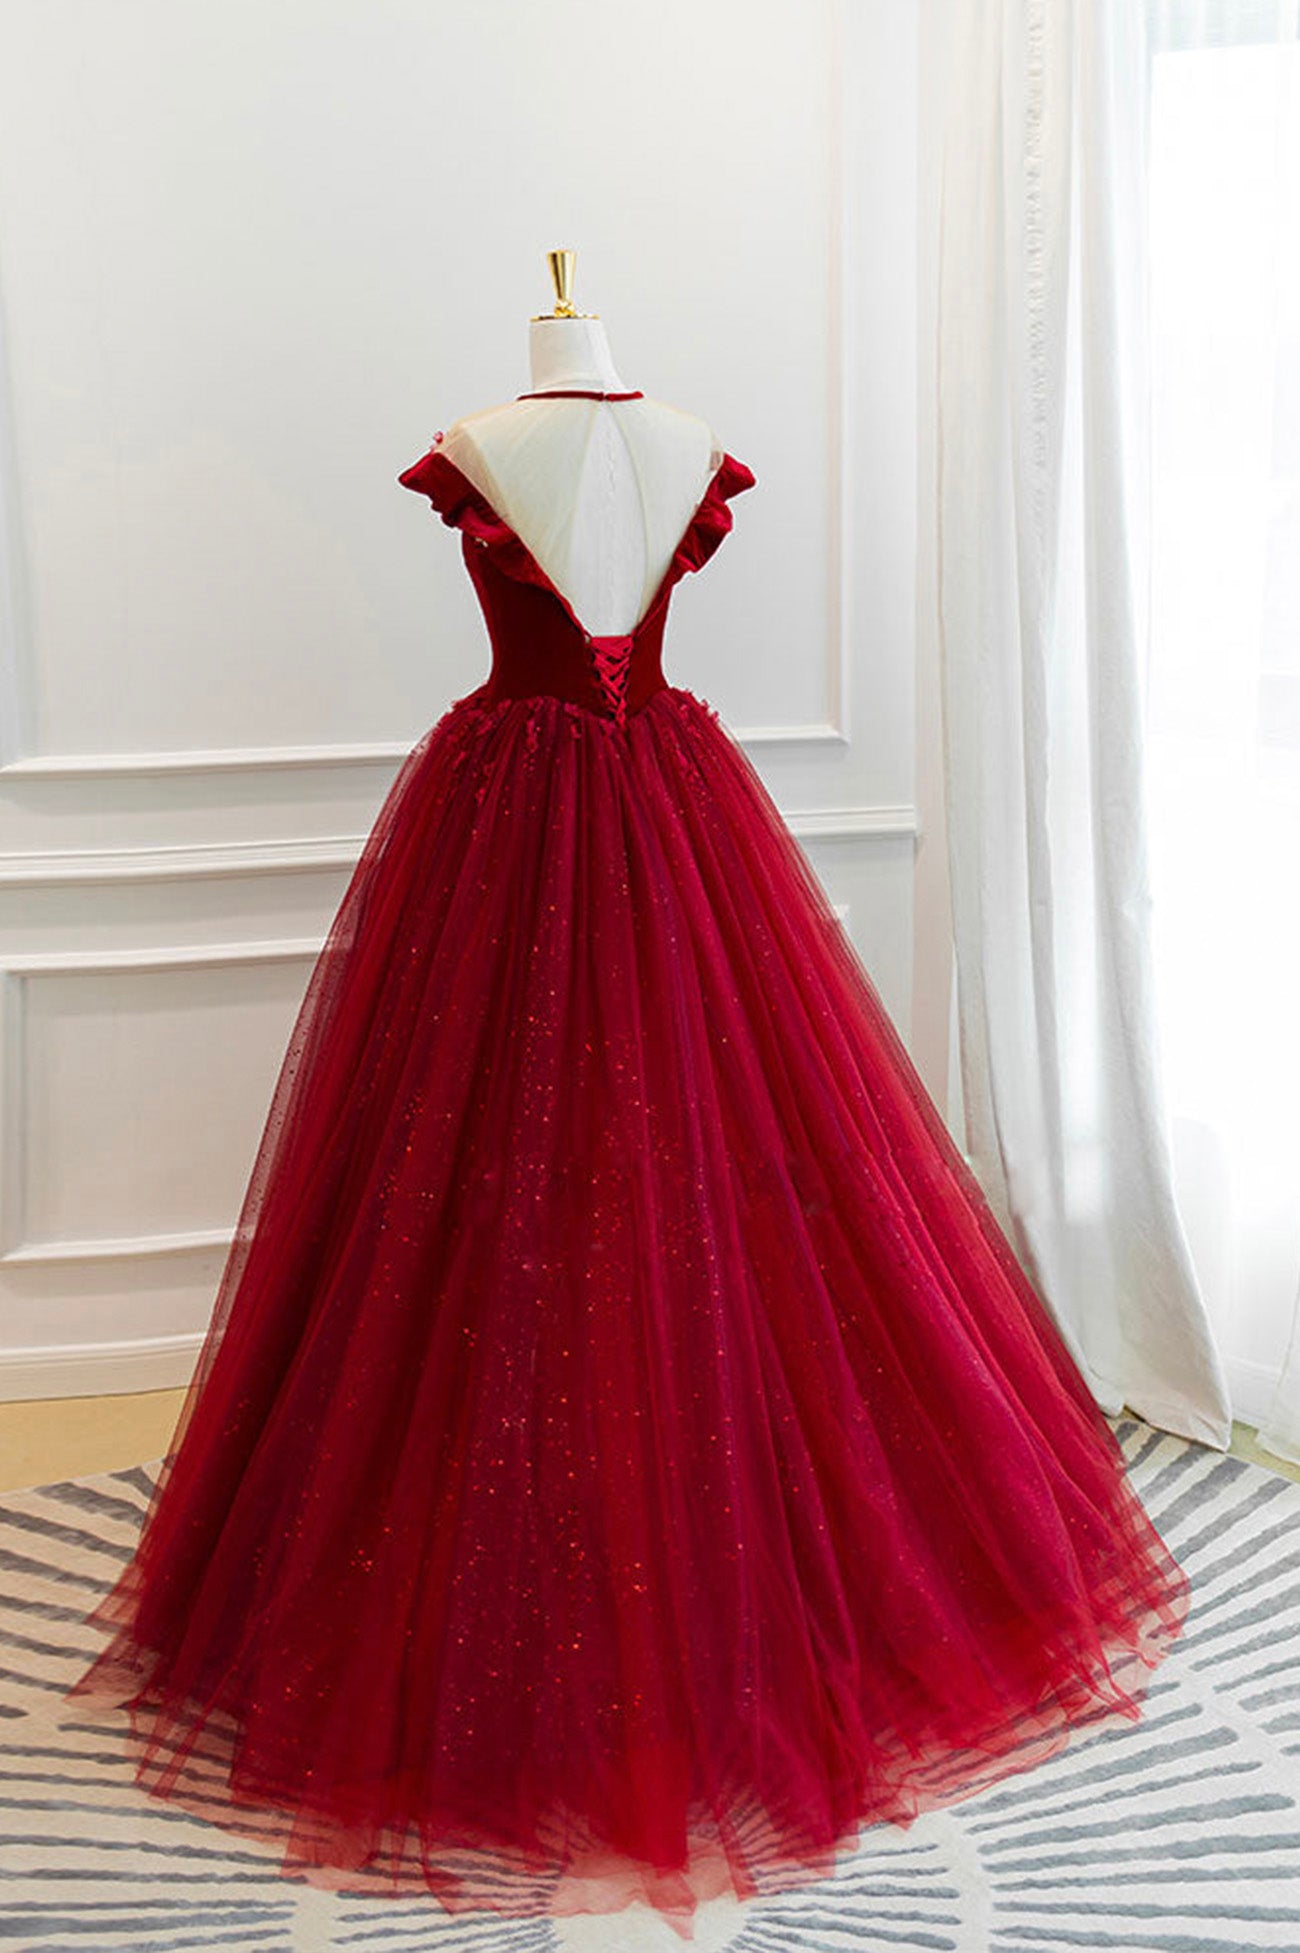 Burgundy Velvet Tulle Long Prom Dress